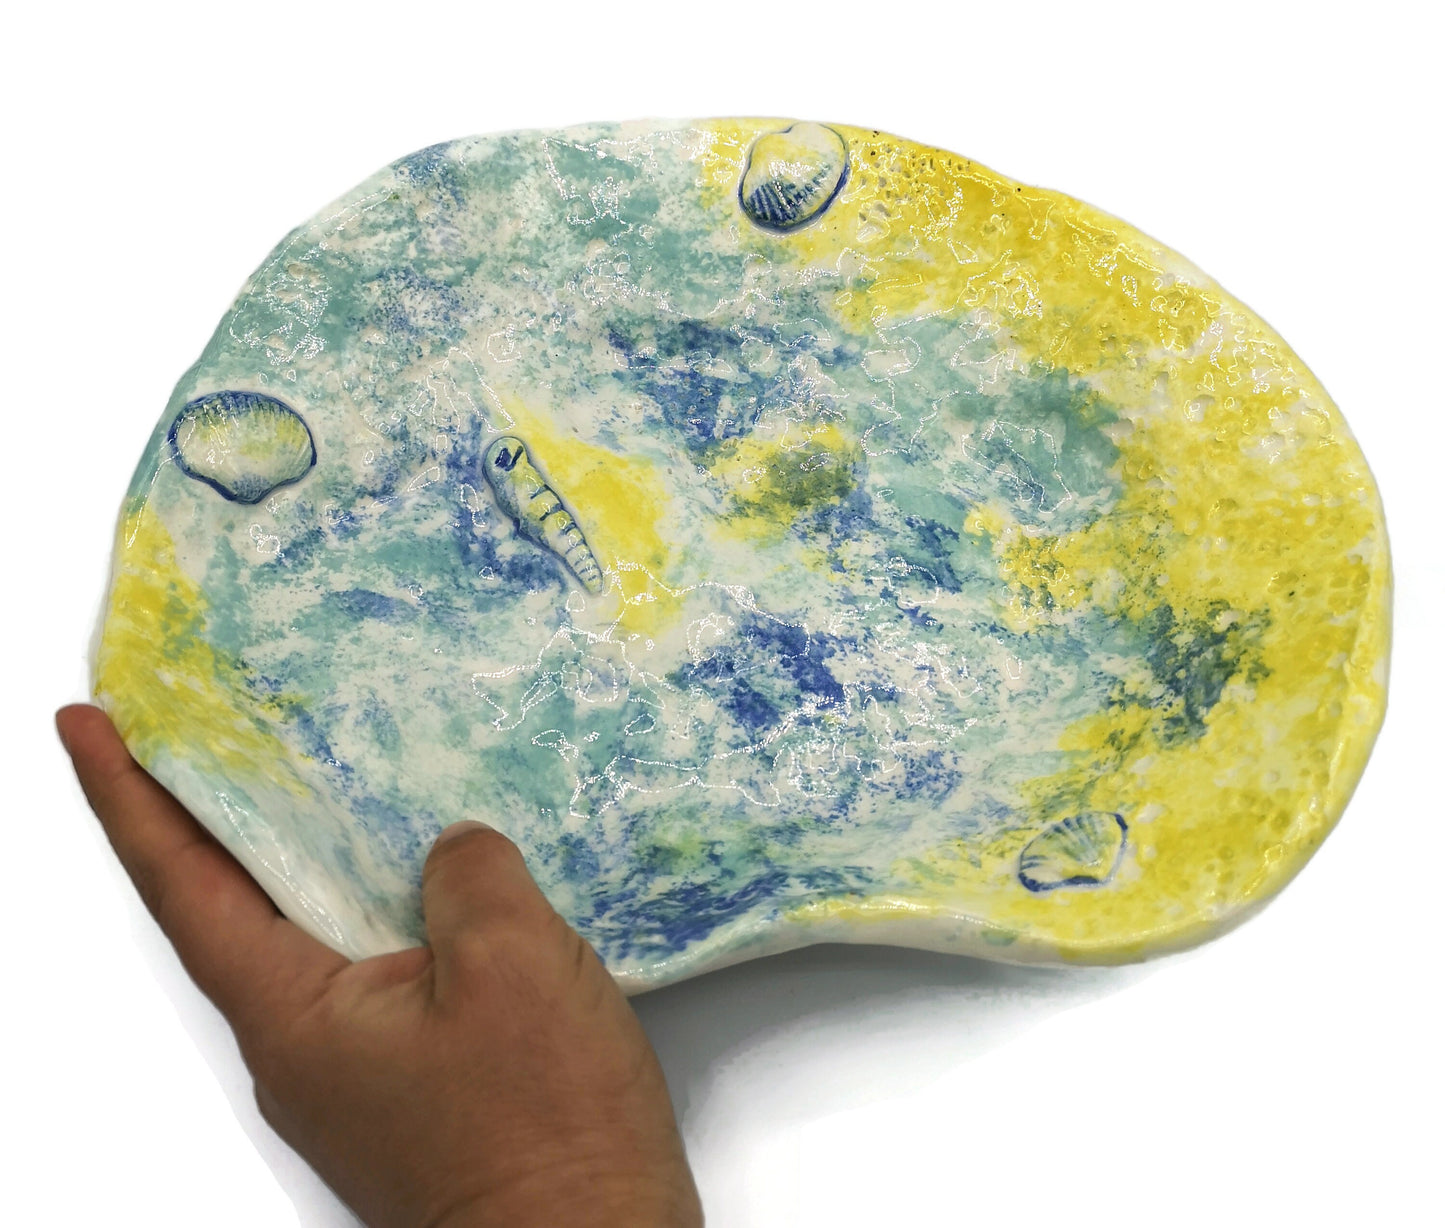 Decorative Bowl, Hand Painted Key Bowl Beach Themed Decor, Handmade Ceramic Bowl, Boho Bathroom Decor, Large Centerpiece Bowl - Ceramica Ana Rafael